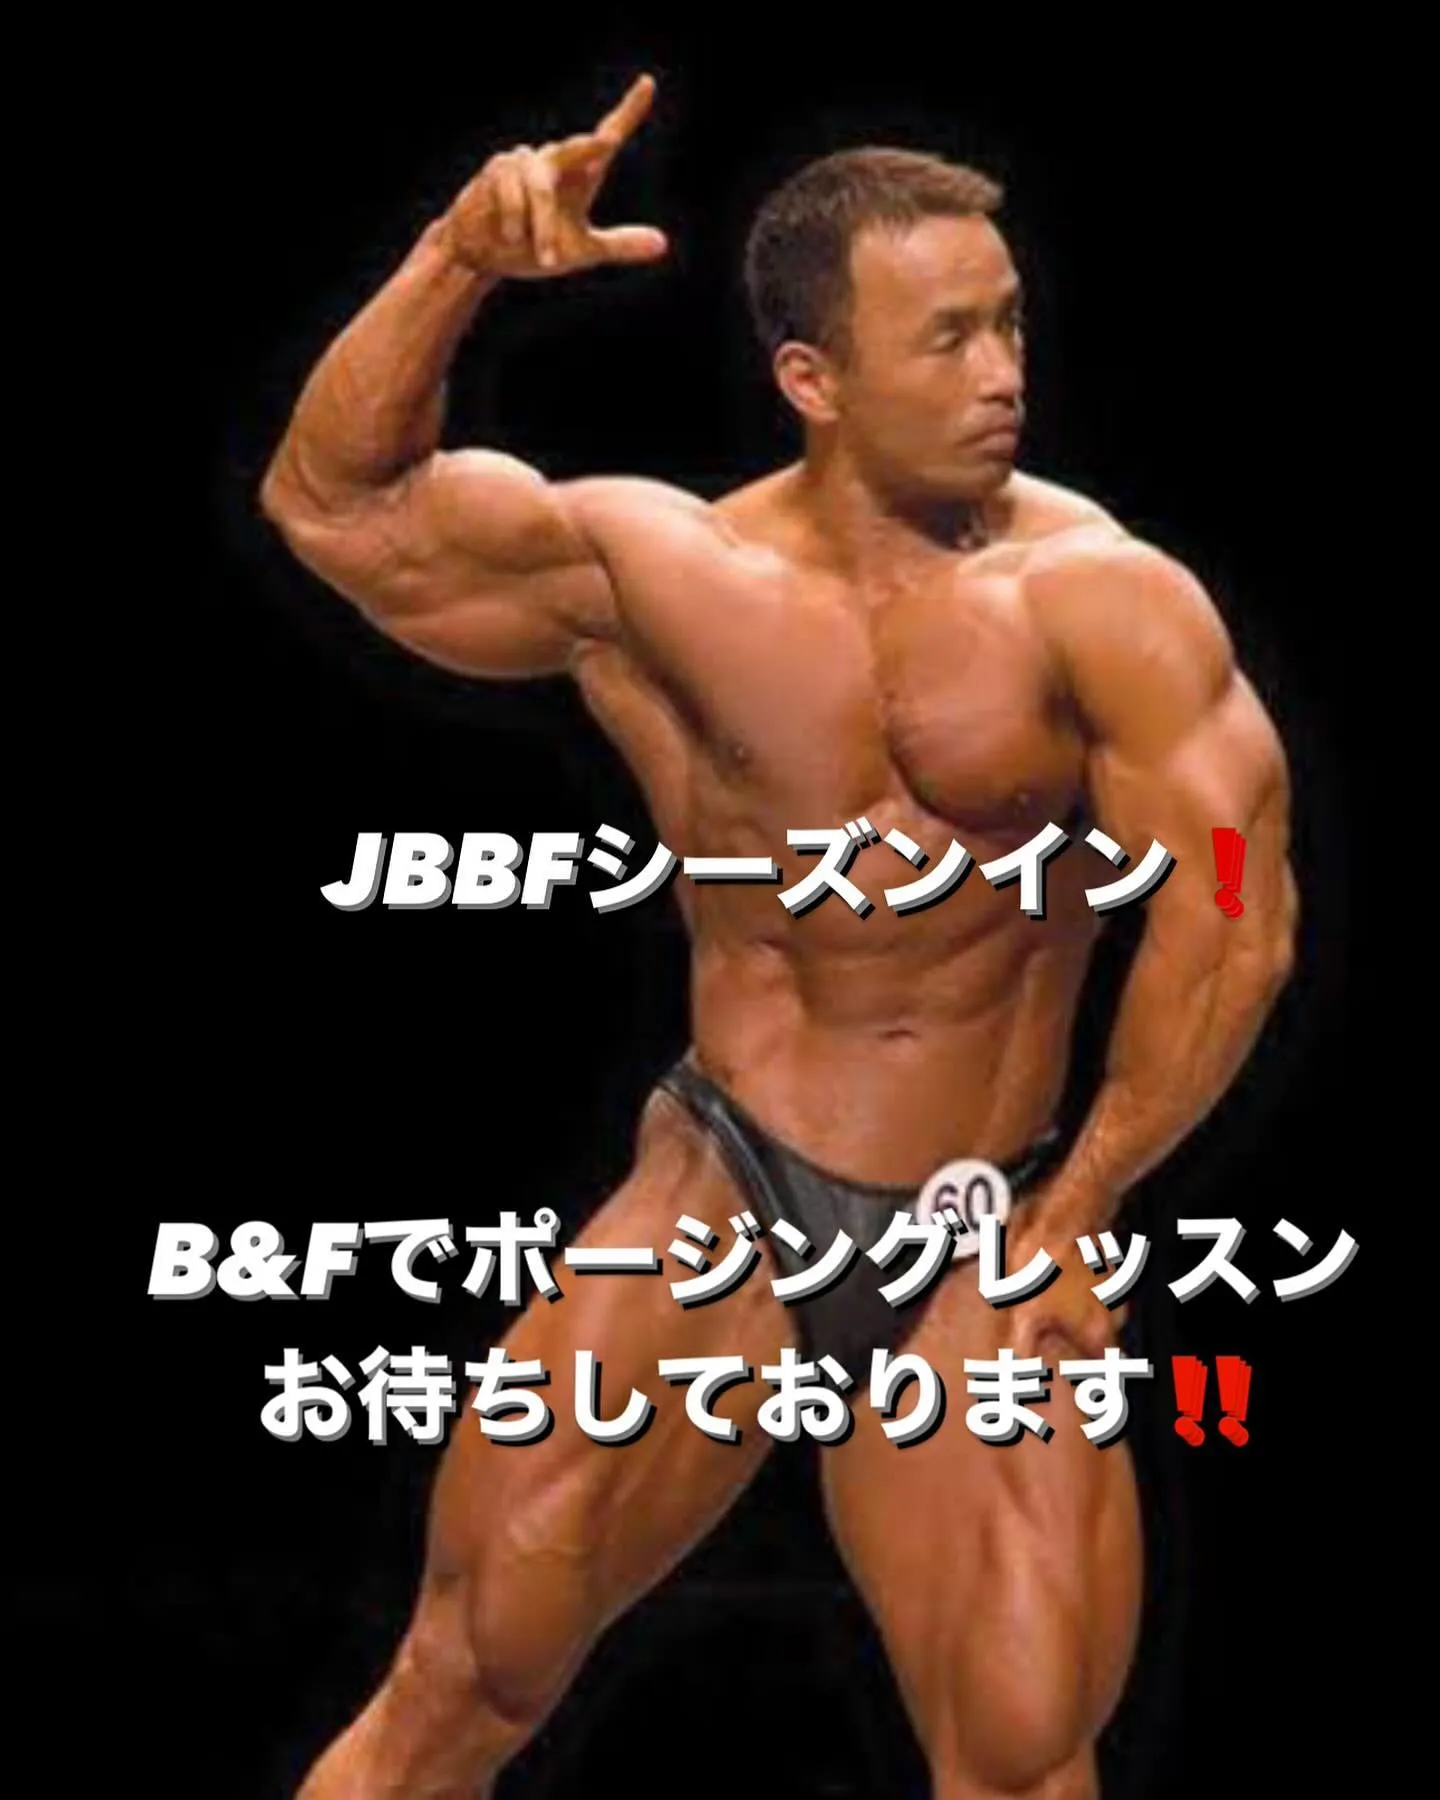 昨日東京オープンが開催され、JBBFもコンテストシーズンに入...